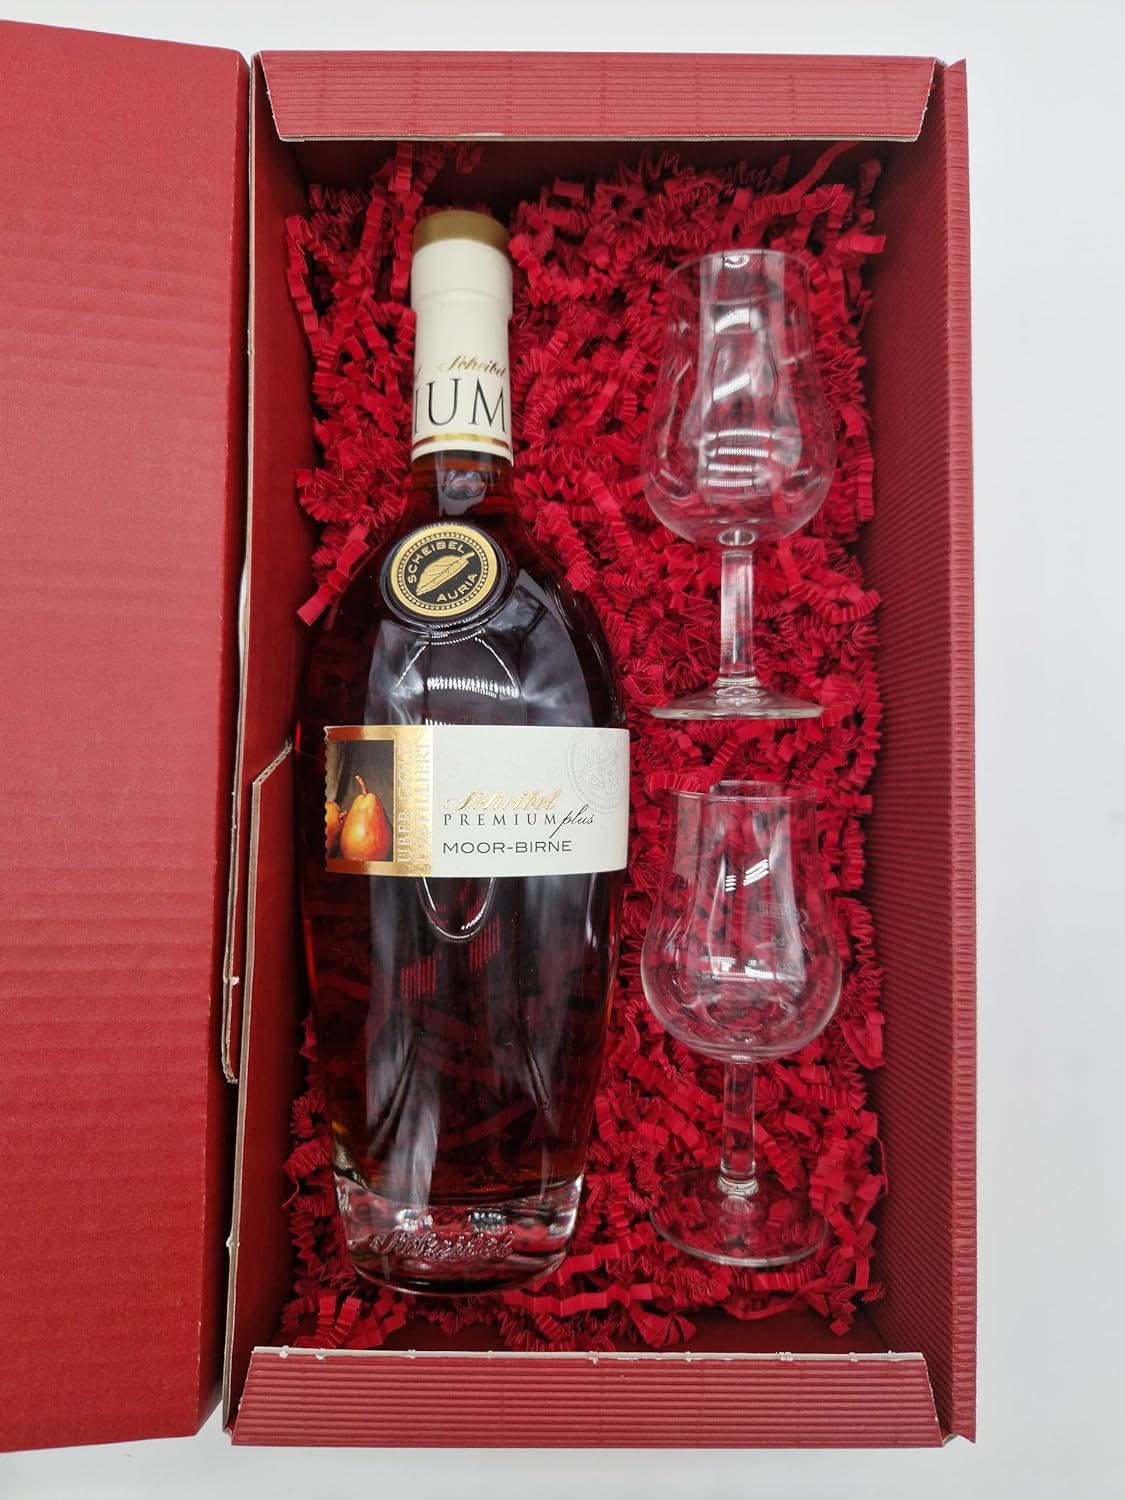 Scheibel Premium Plus Moor-Birne Brandy 40% Vol. + 2 hochwertige Gläser im Geschenkset